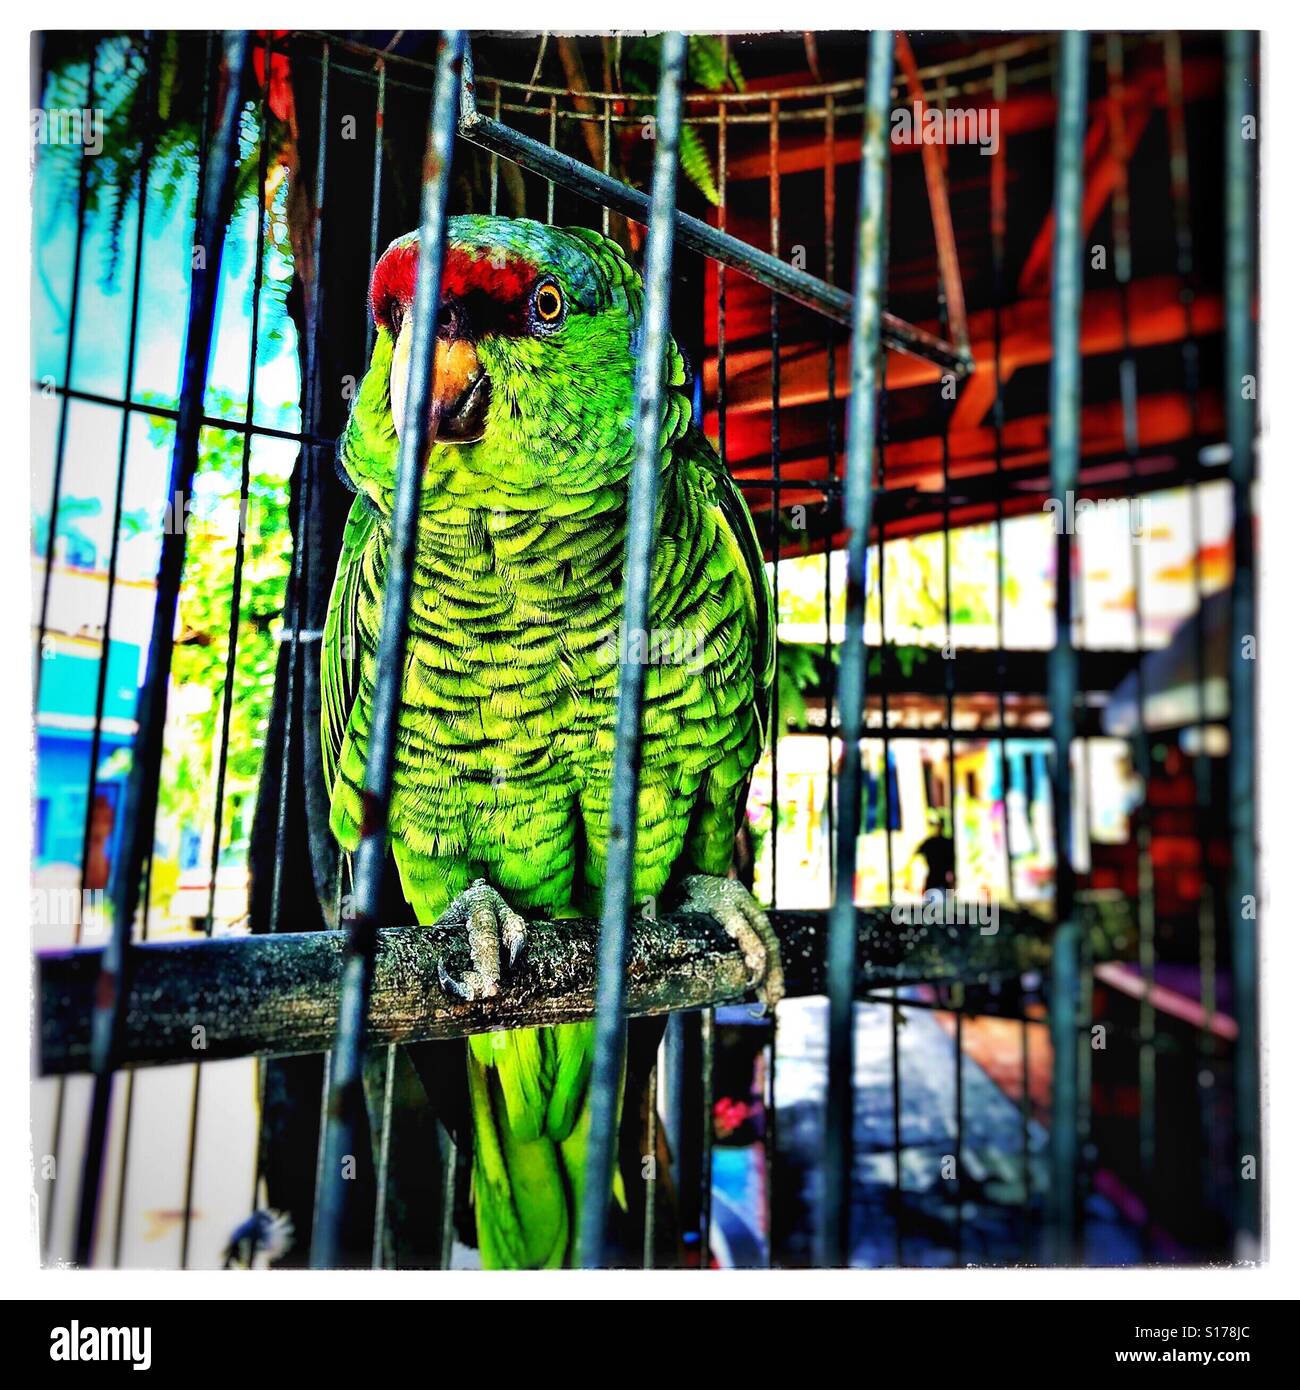 Ein leuchtender grüner Papagei mit einem roten Stirn Patch hockt in seinem Käfig auf dem Bürgersteig, im Gespräch mit Menschen, die vorbeigehen. Stockfoto